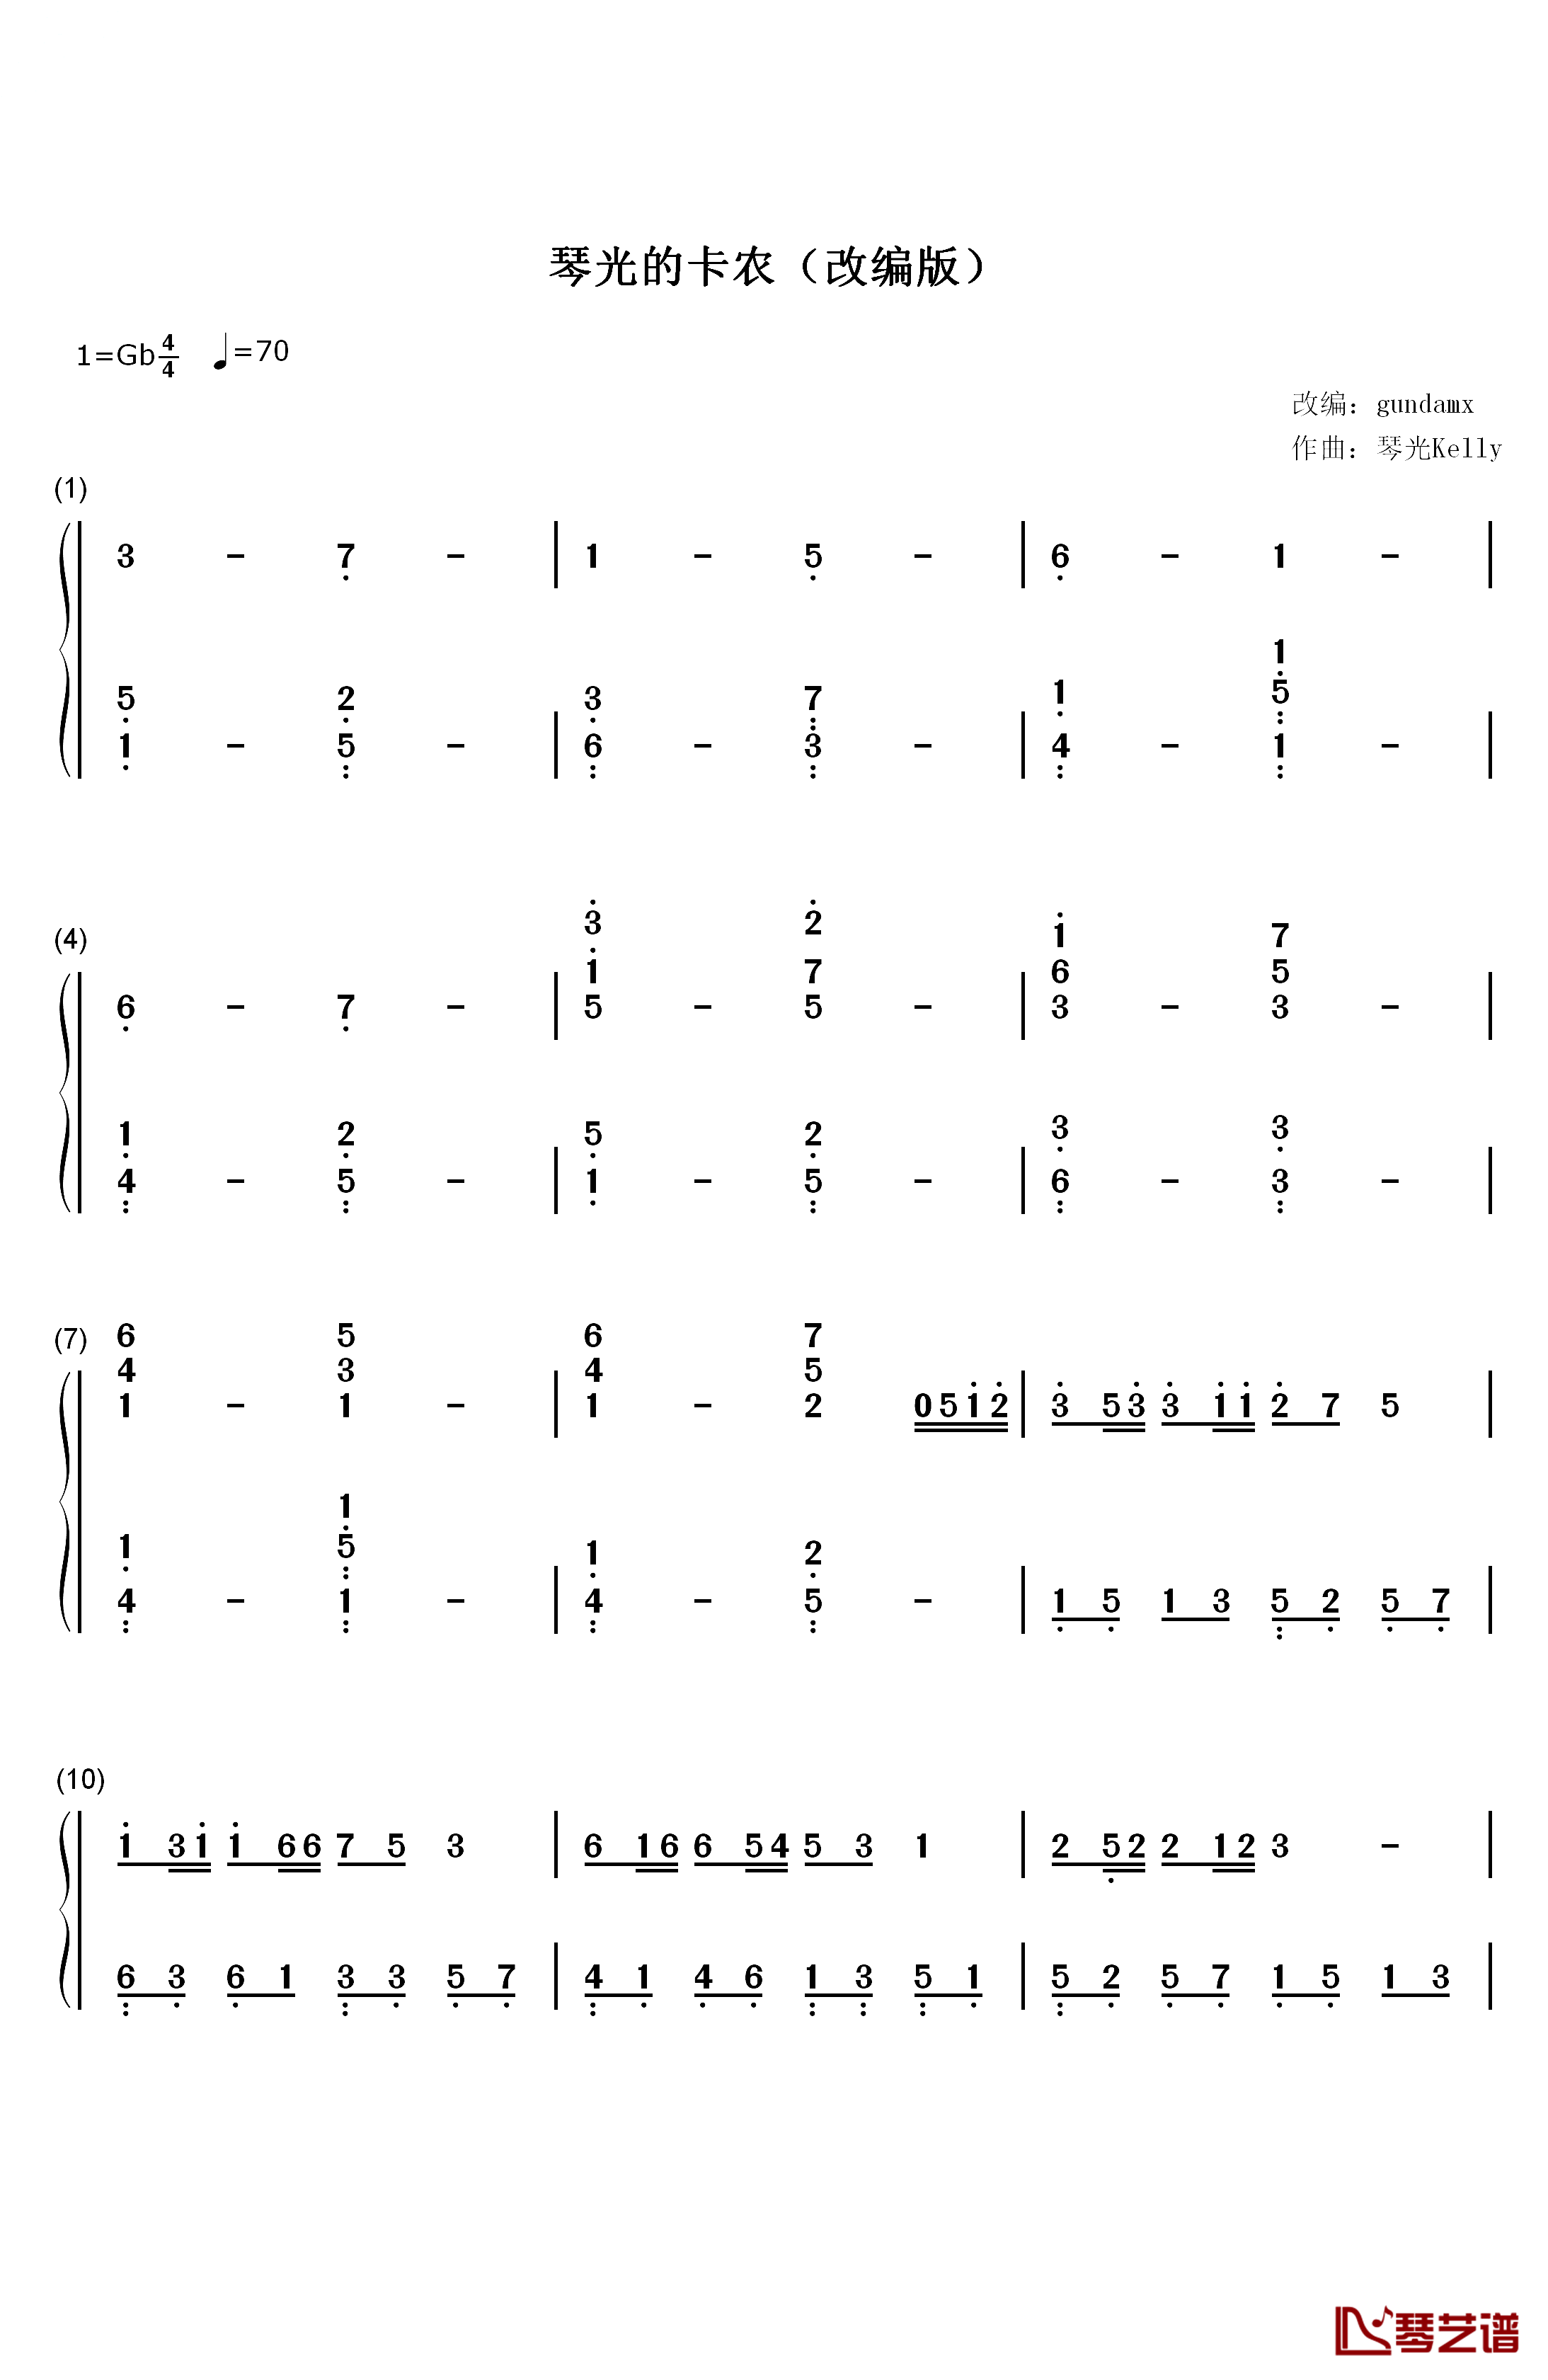 琴光的卡农钢琴简谱-数字双手-gundamx1